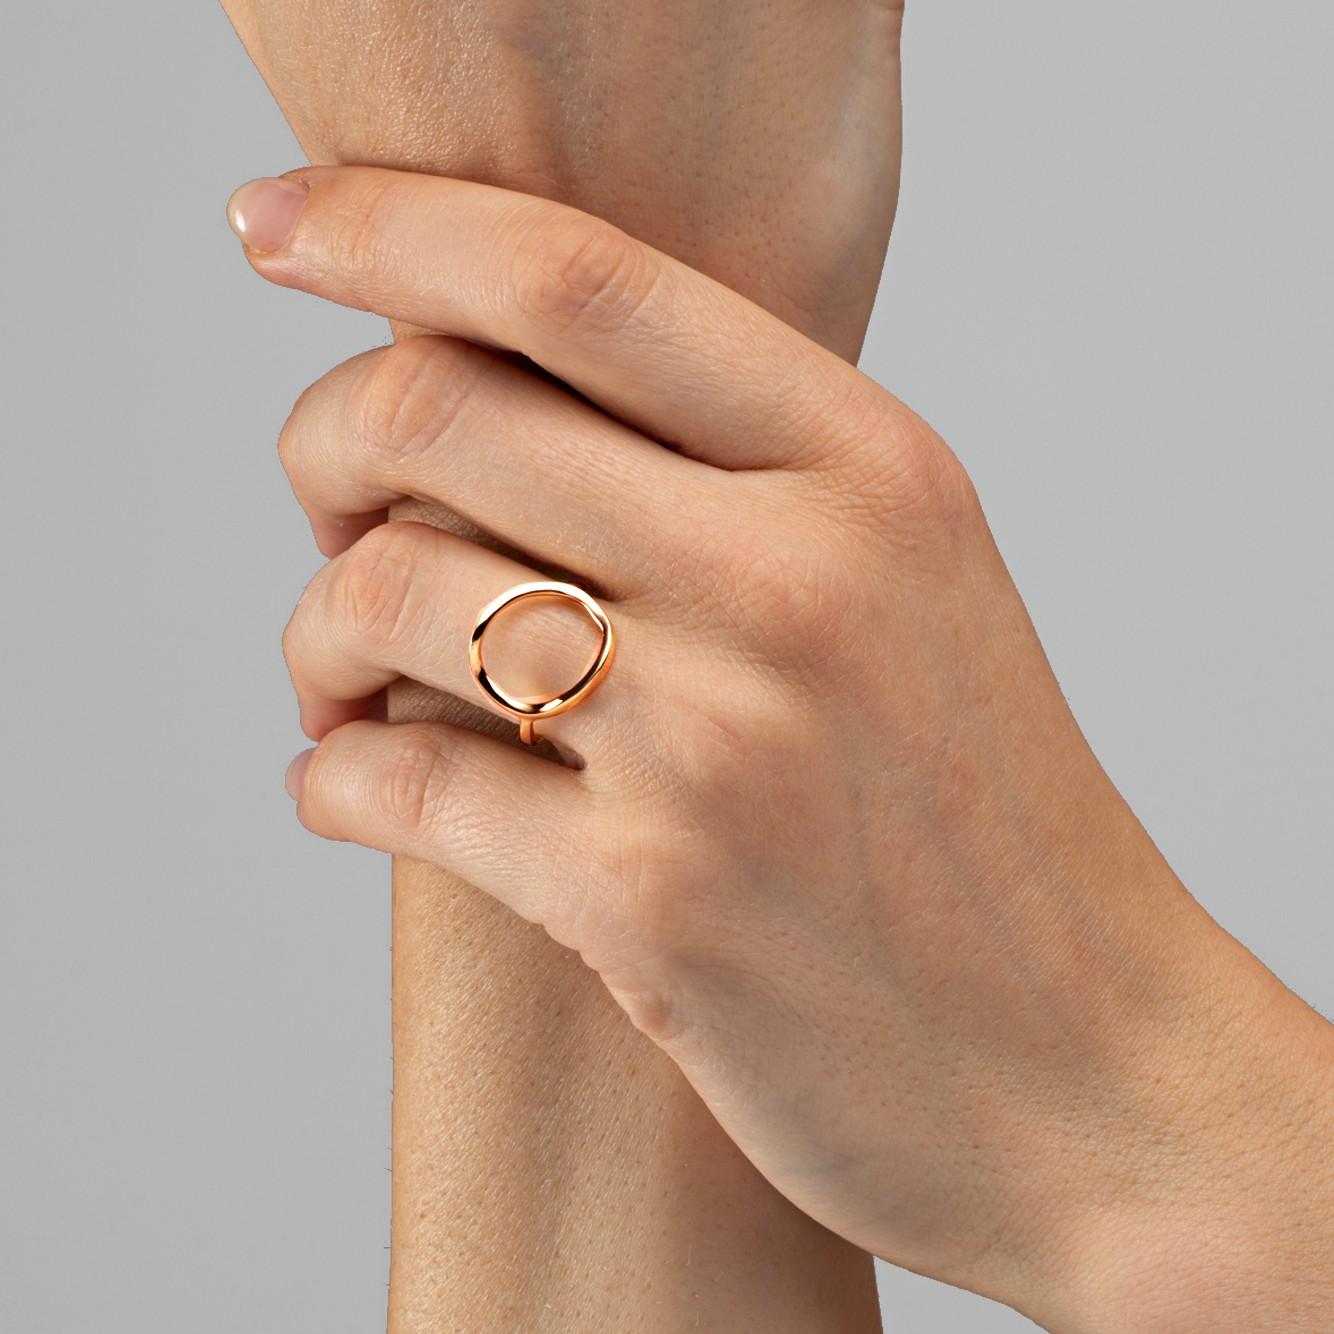 Alex Jona Design Kollektion, handgefertigt in Italien, offener Ring aus 18 Karat Roségold. Ring Größe 6, kann angepasst werden.
Ein klassisches Design mit einer schönen Bedeutung, für alle, die etwas Besonderes darstellen wollen. In der japanischen